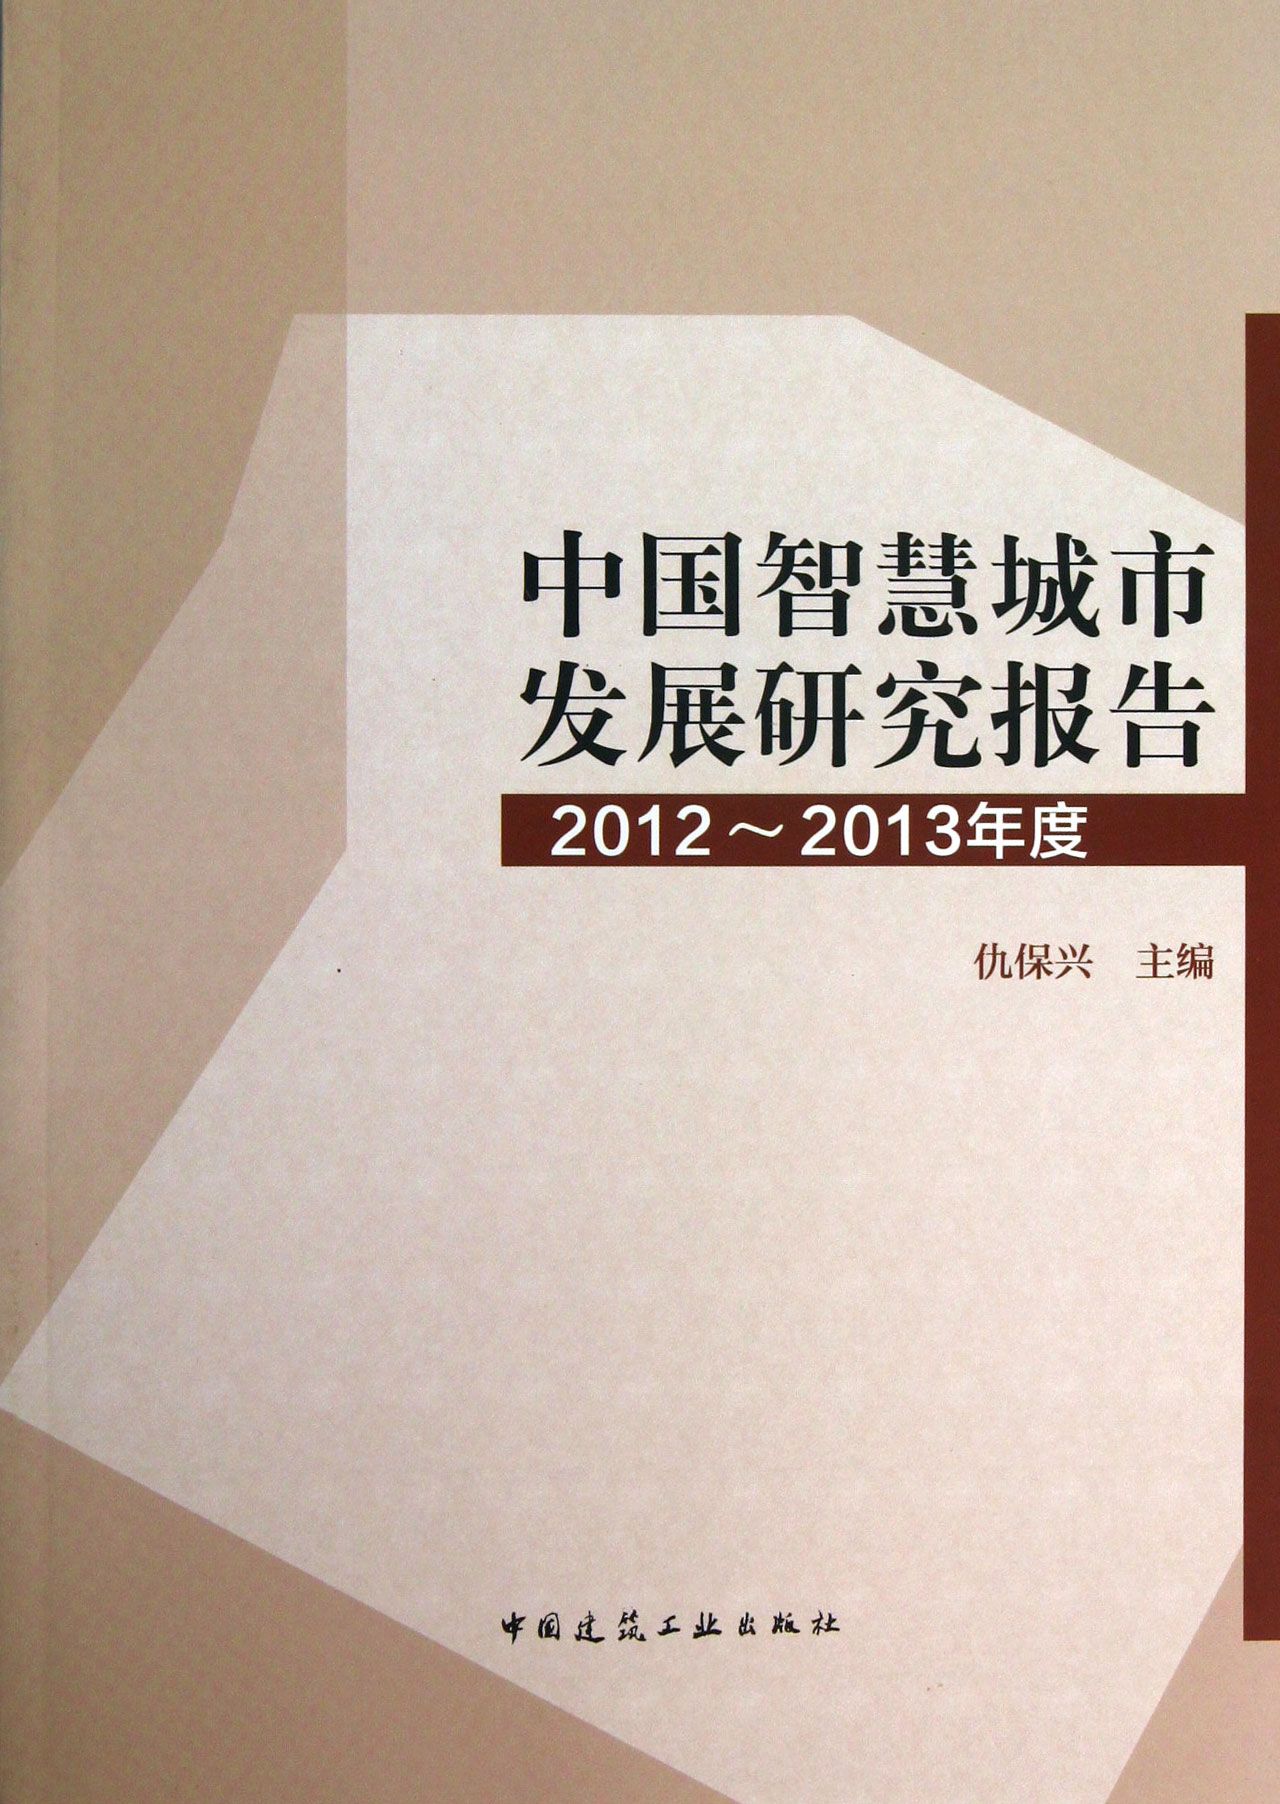 中国智慧城市发展研究报告-2012-2013年度 仇